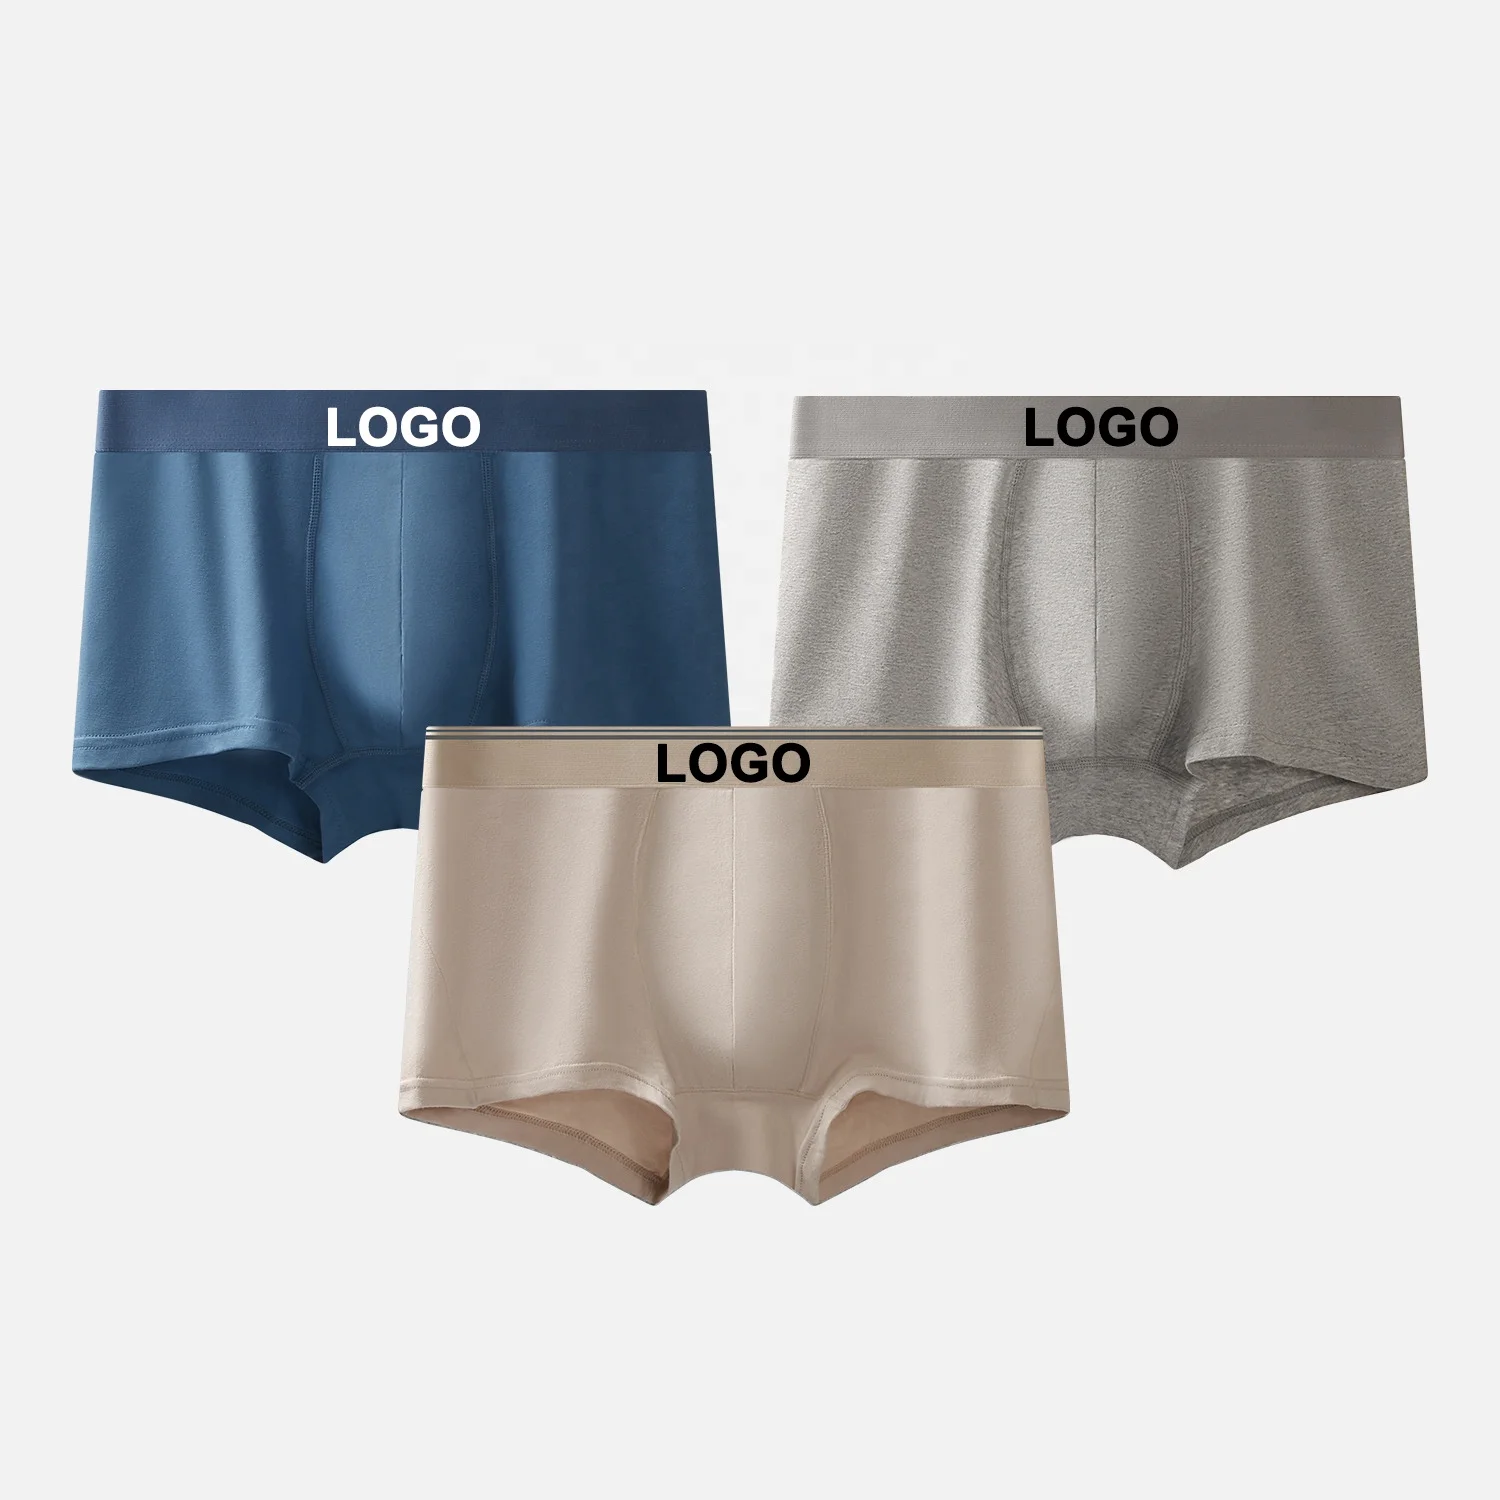 

2022 Customized LOGO 95 Cotton Man Underwear Stretch Mid Waist Comfortable Undergarments Men Boxers Briefs